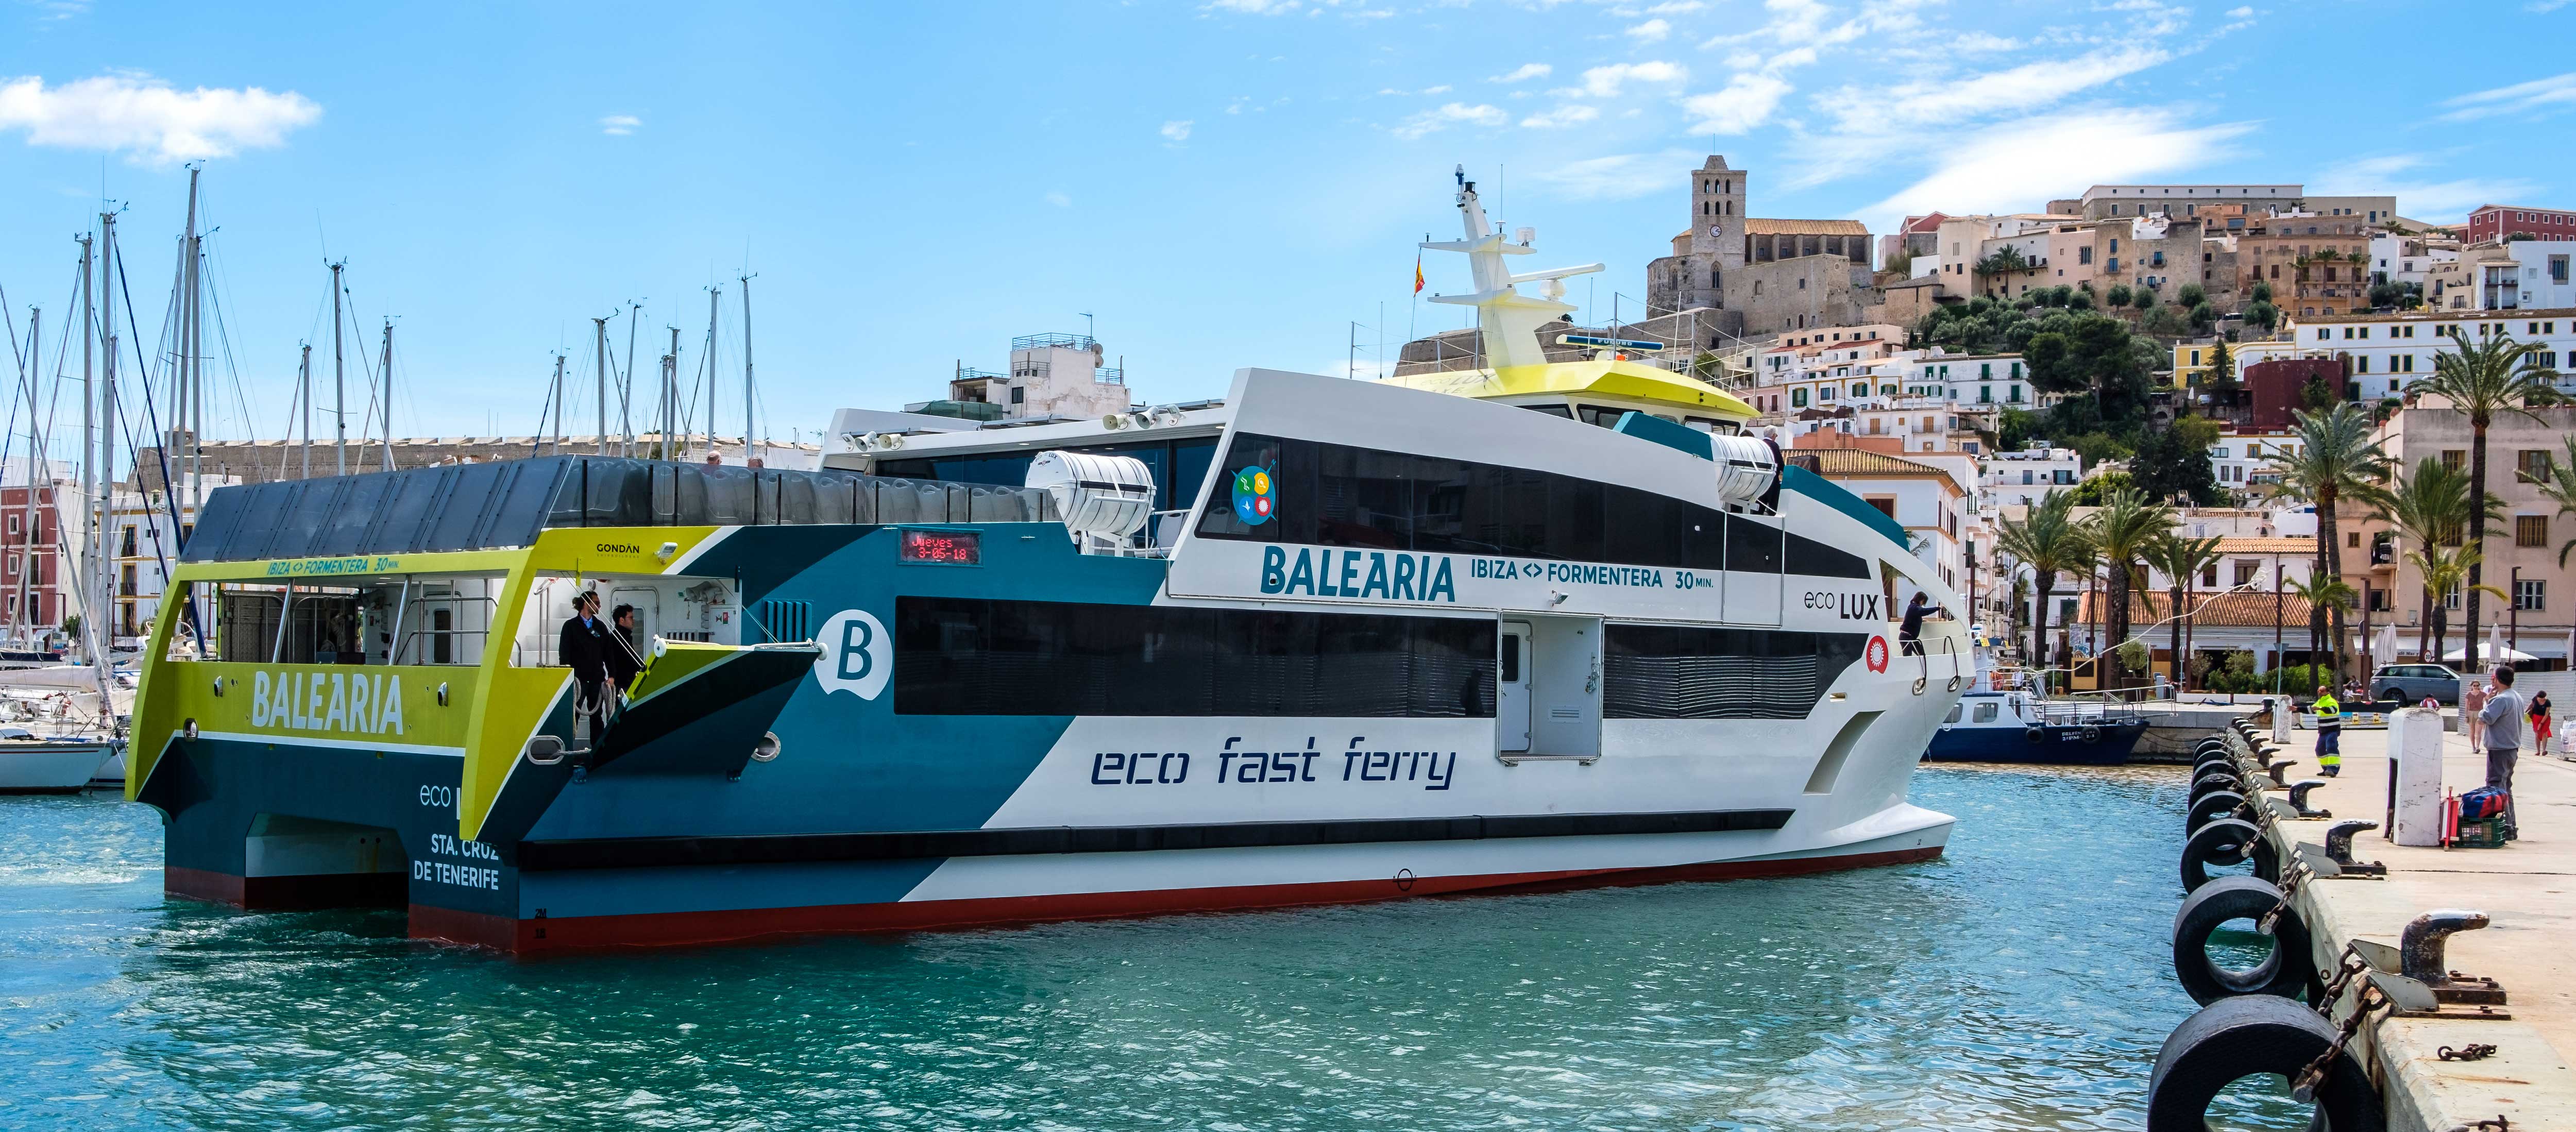 Estrenando el 'eco fast ferry', una travesía Ibiza - Formentera en el EcoLux